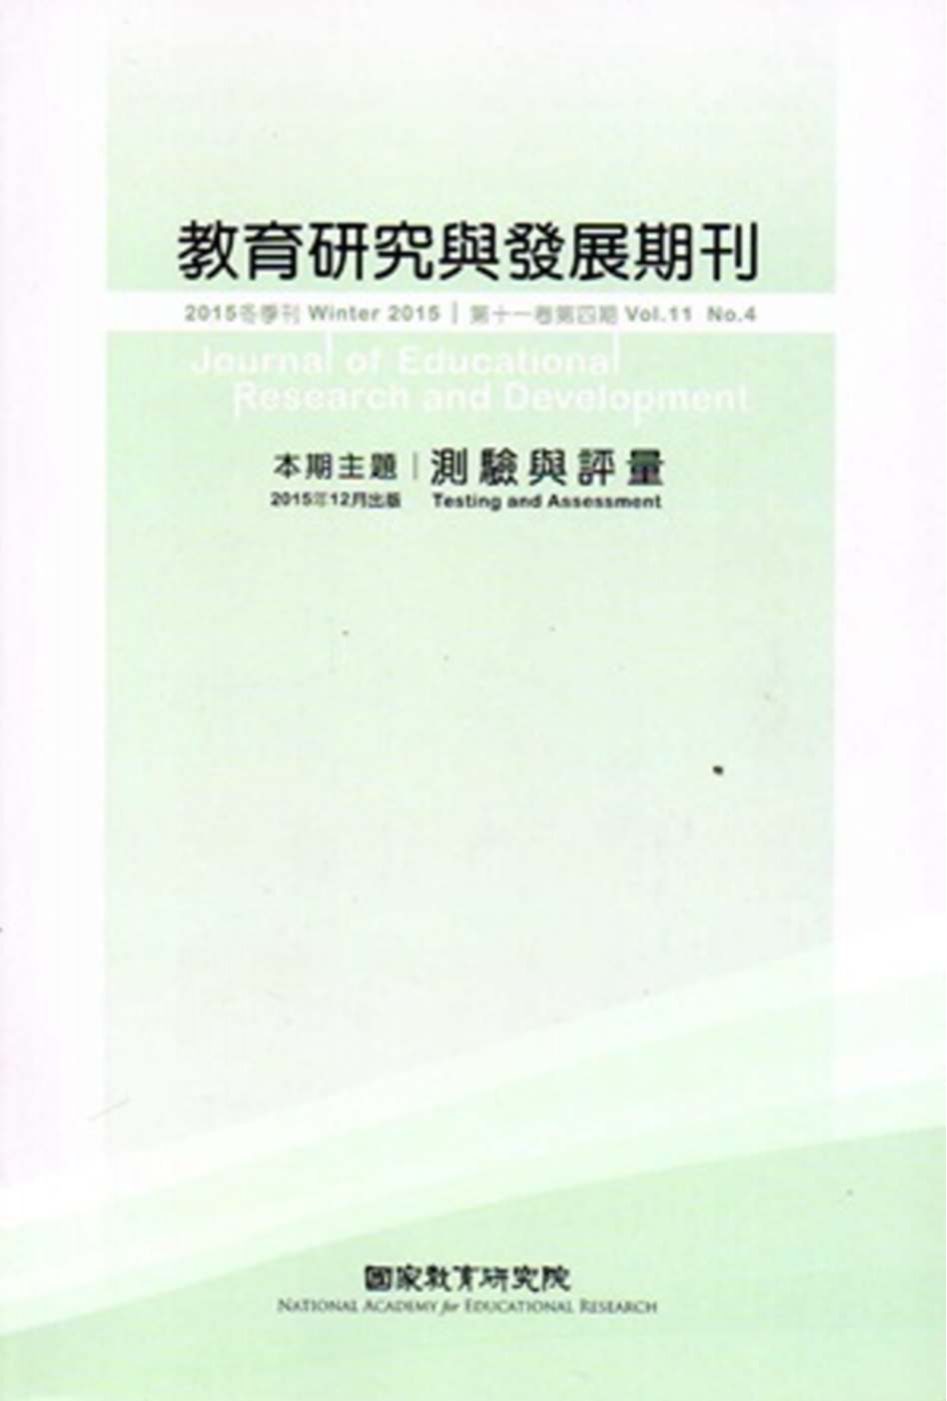 教育研究與發展期刊第11卷4期(104年冬季刊)